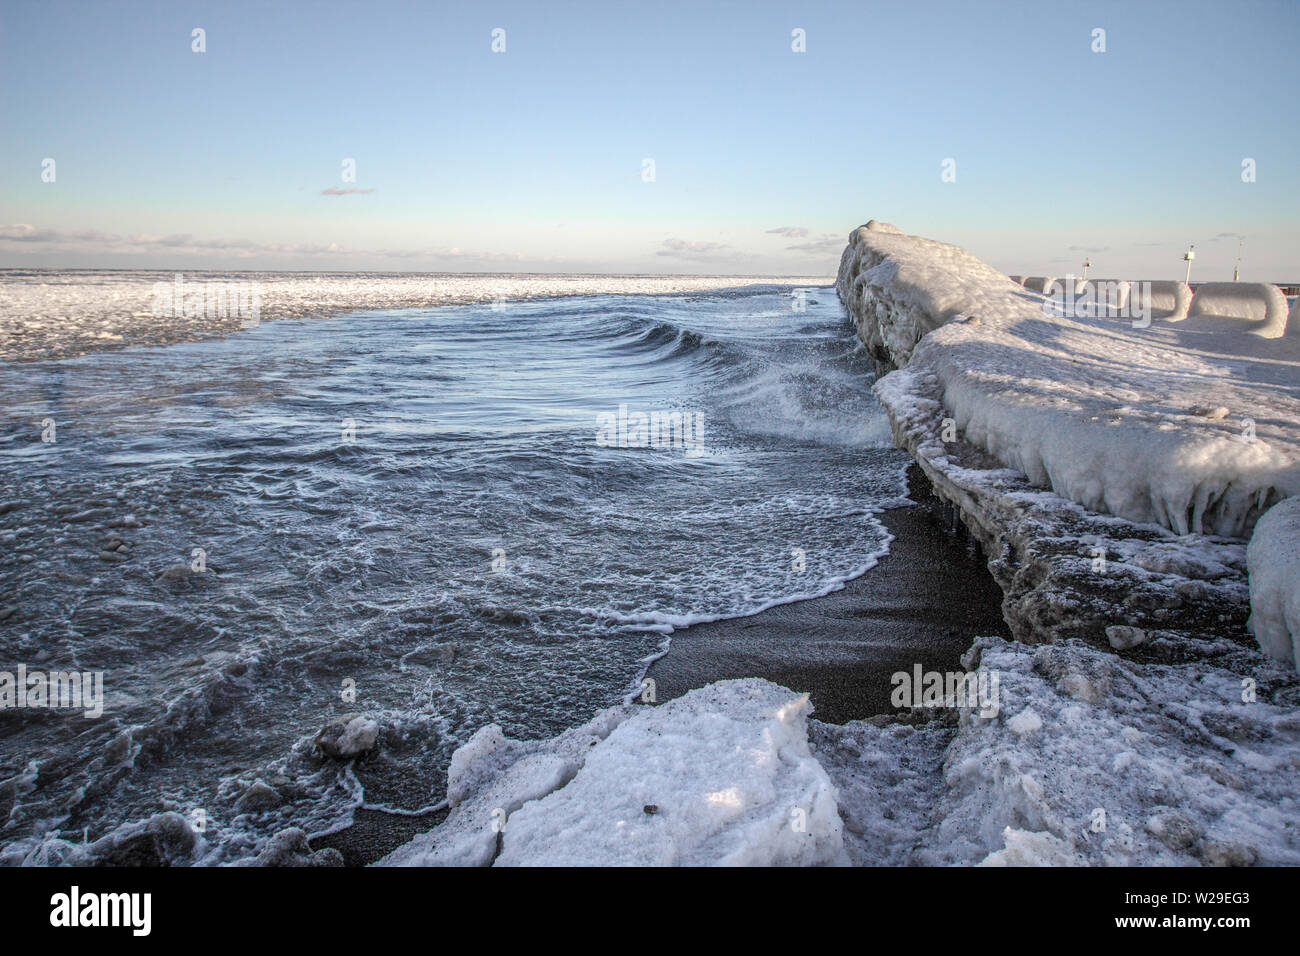 Invierno en los Grandes Lagos. Costa congelada, hielo y olas a lo largo de la costa del lago Huron en las cercanías de Port Sanilac, Michigan. Foto de stock